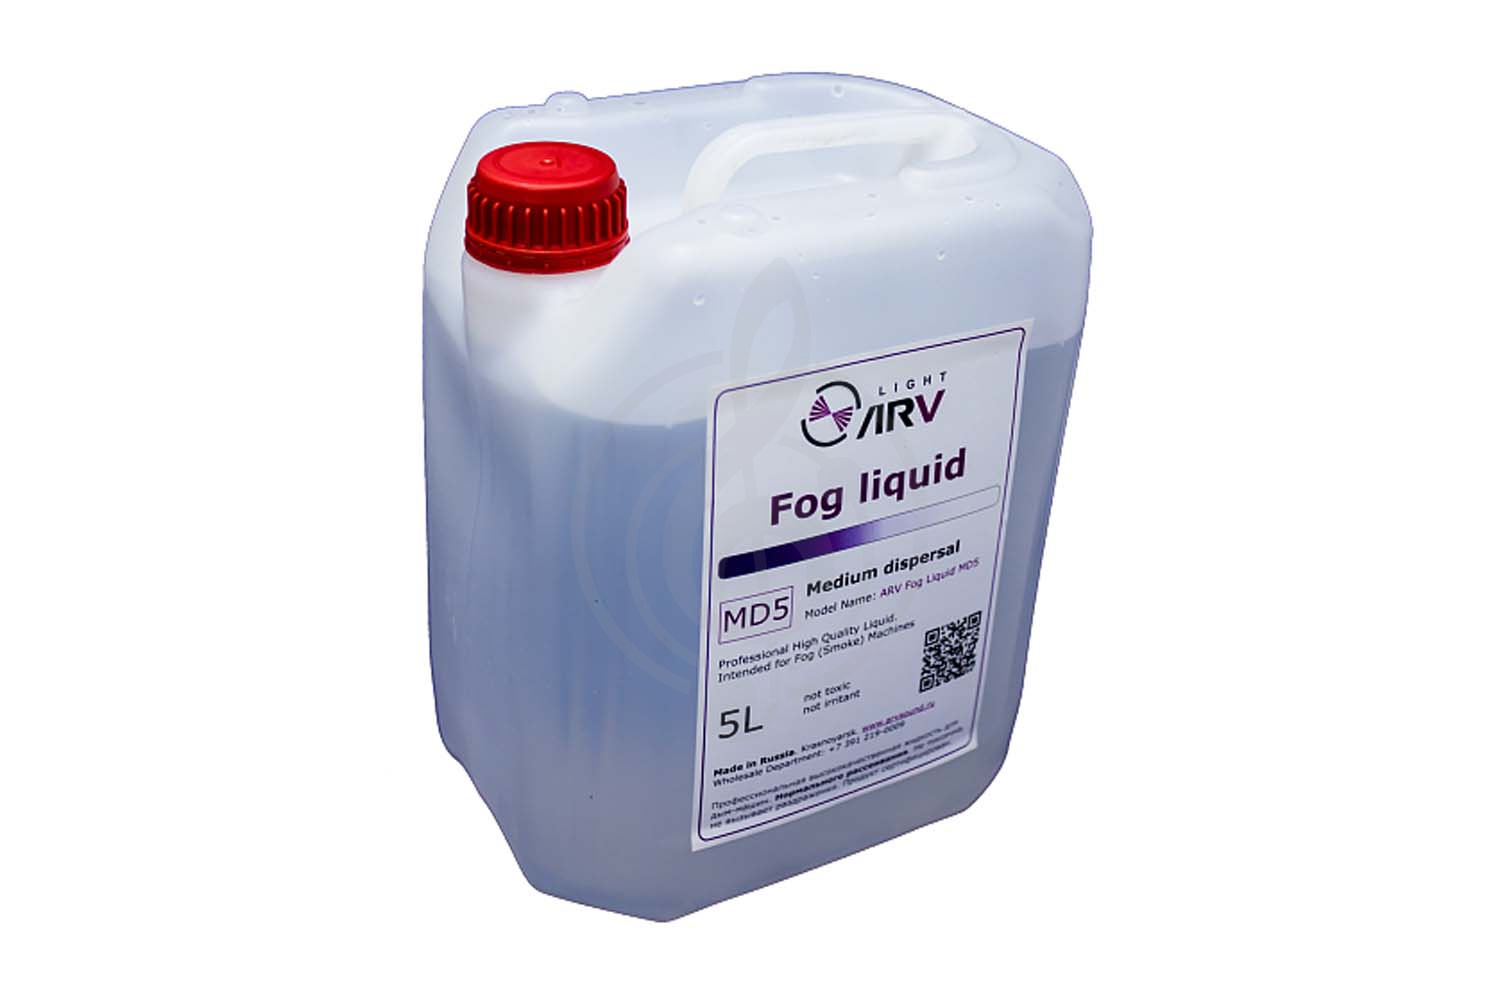 Жидкость для генератора дыма ARV Fog Liquid MD5 - Профессиональная жидкость для дым-машин, нормального рассеивания (250x190x140), ARV MD5 в магазине DominantaMusic - фото 1